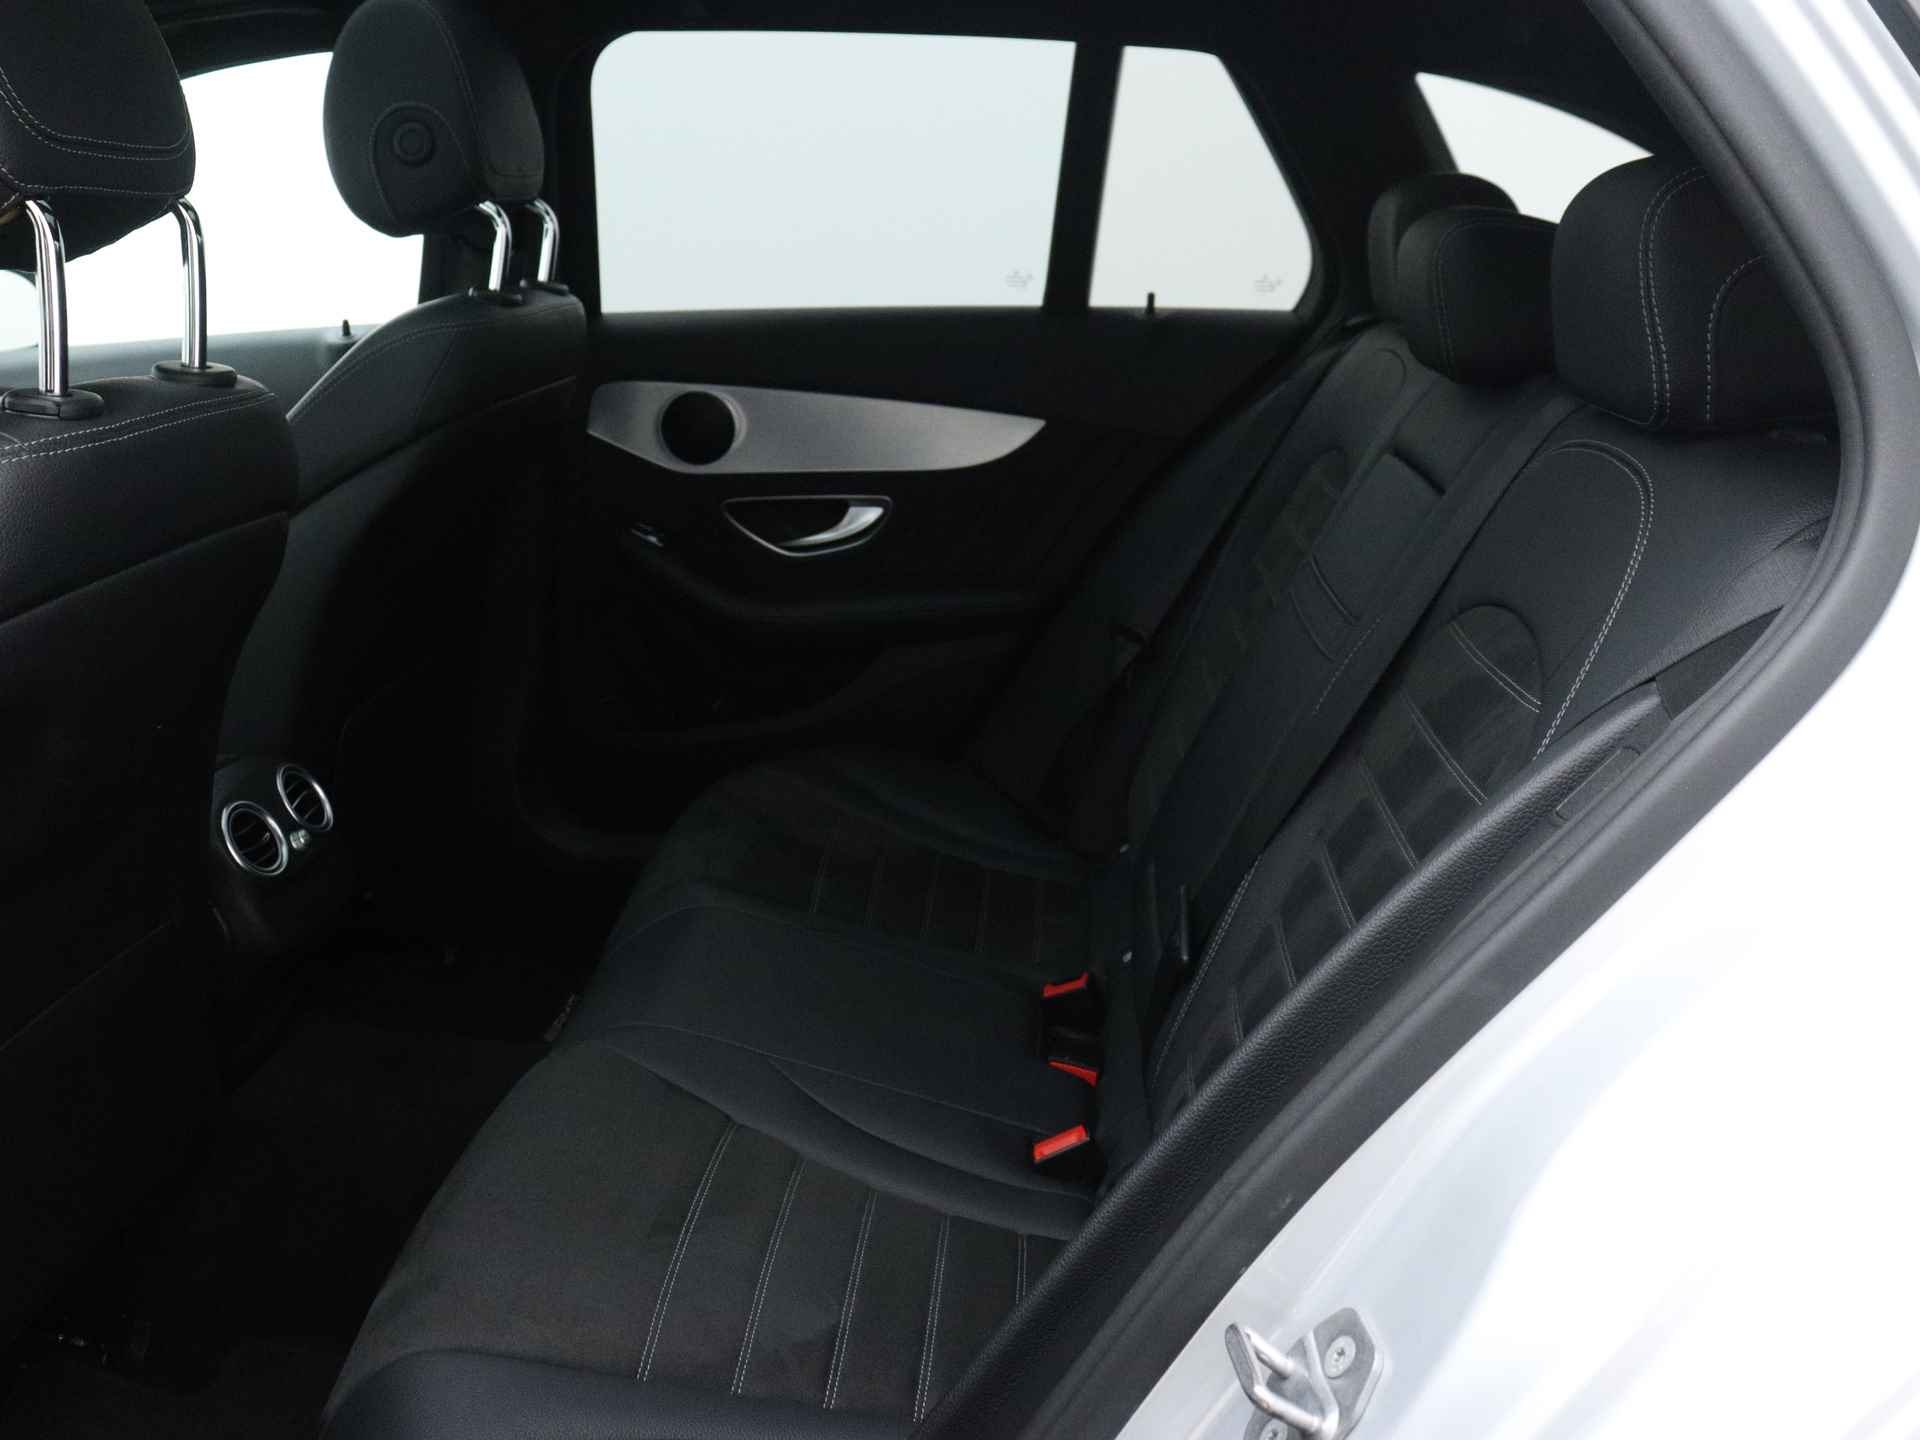 Mercedes-Benz C-Klasse 180 Business Solution AMG | 5 spaaks lichtmetalen velgen | Navigatie | Panoramadak | AMG Styling | Achteruitrijcamera | LED Koplampen | Inclusief 24 maanden MB Certified garantie voor europa. - 21/50